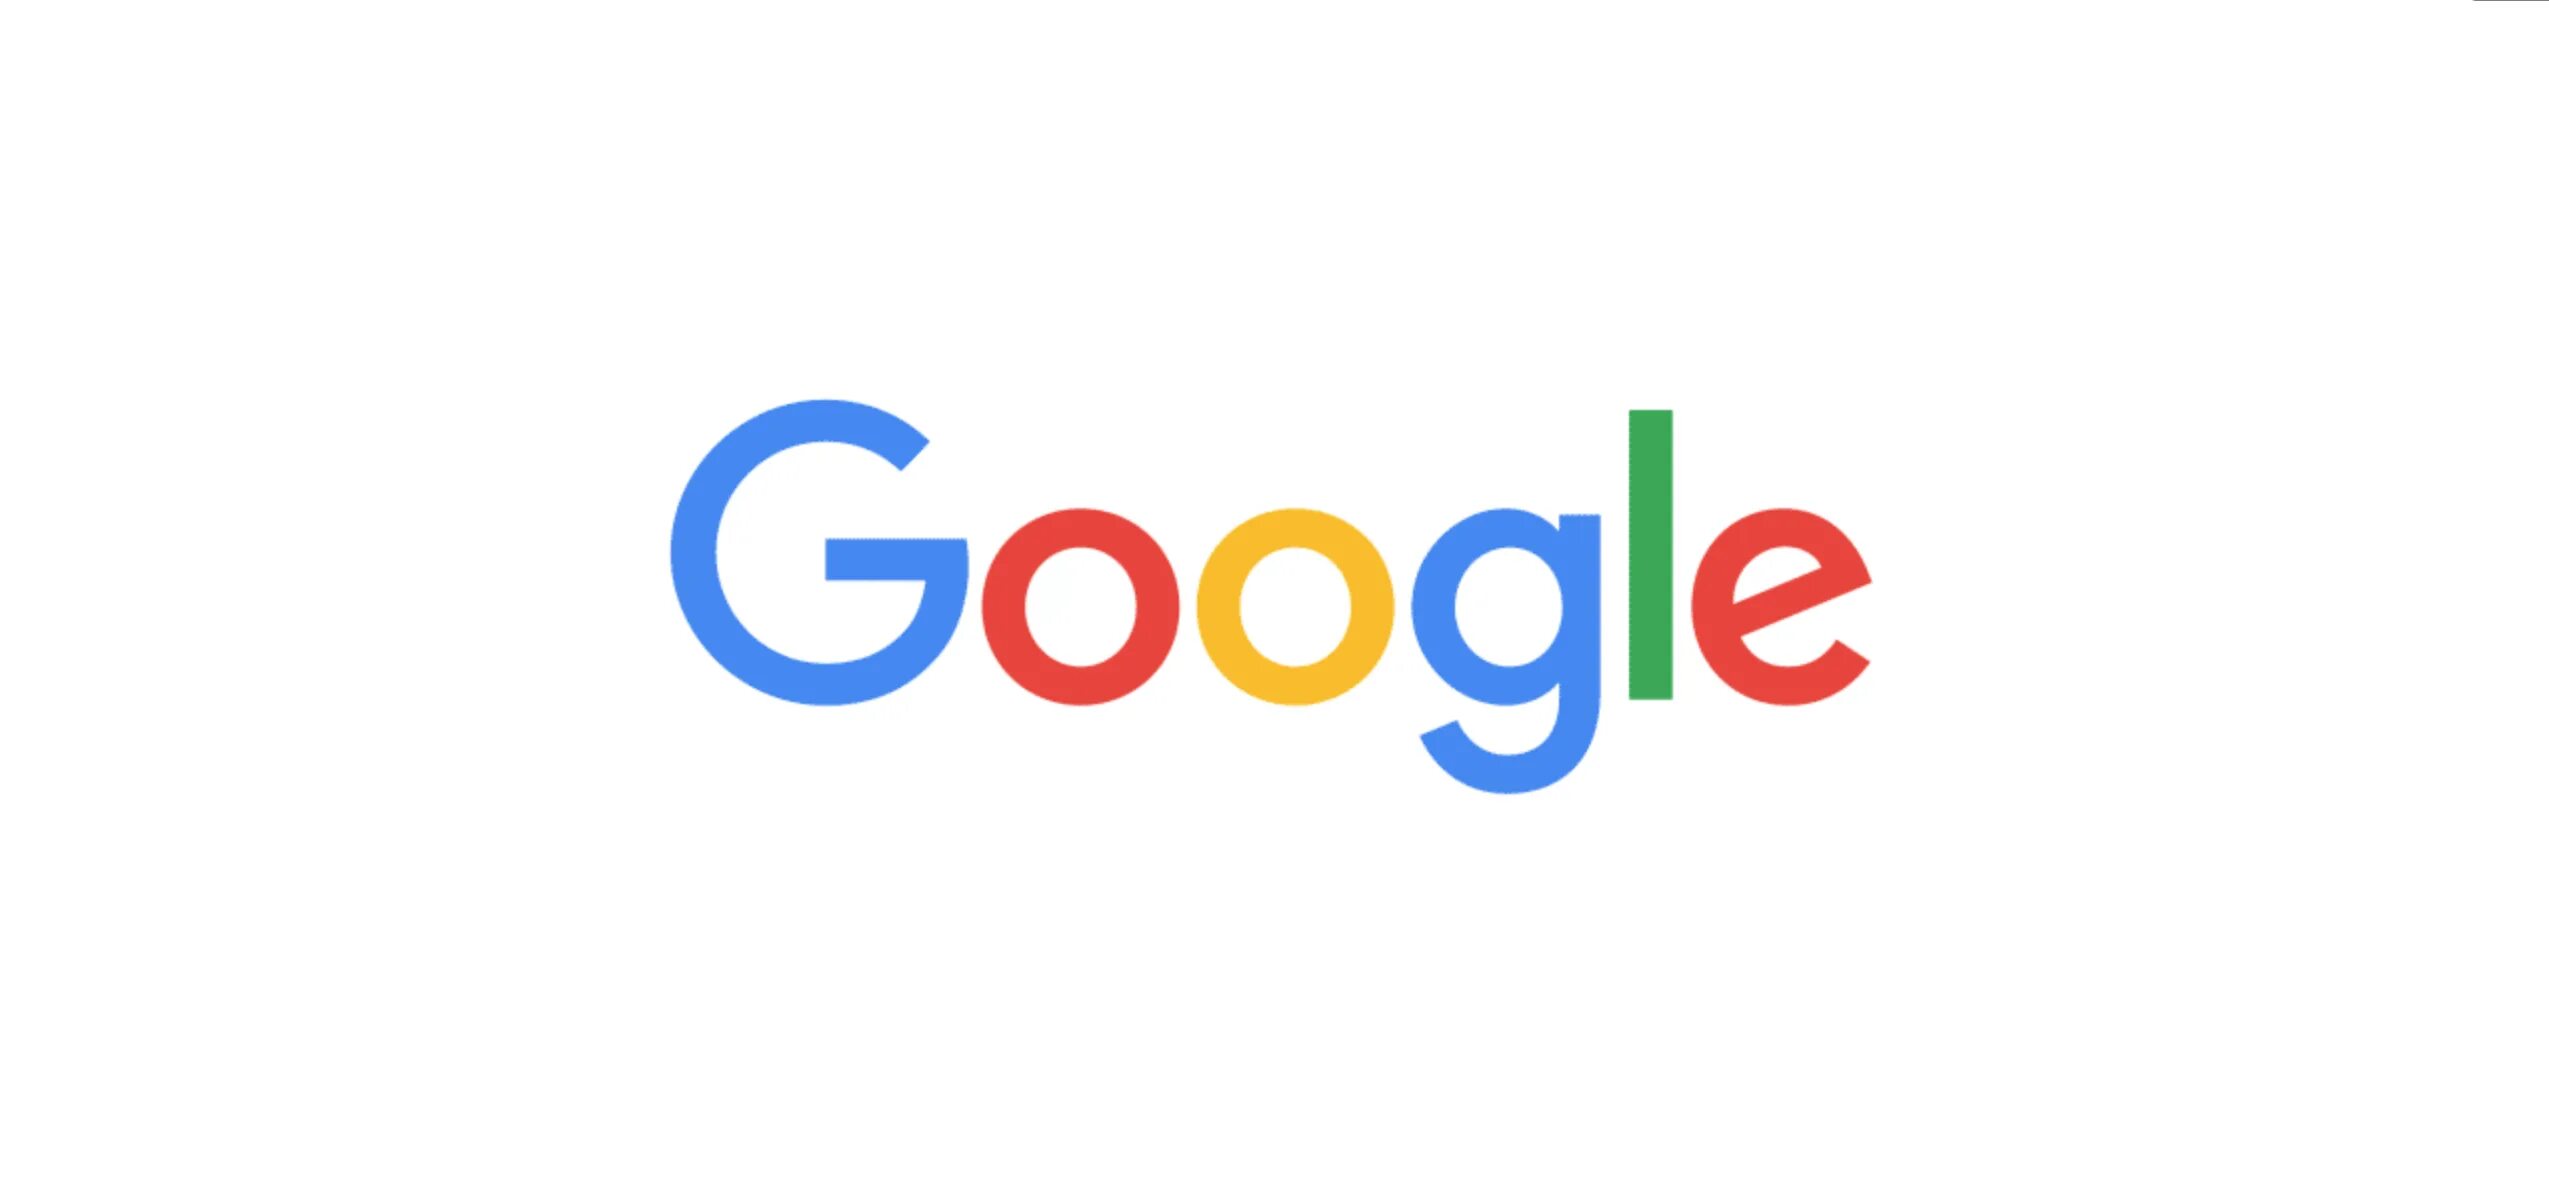 Https search google com. Кейша грей порноактриса. Google логотип. Анимированный логотип гугл.